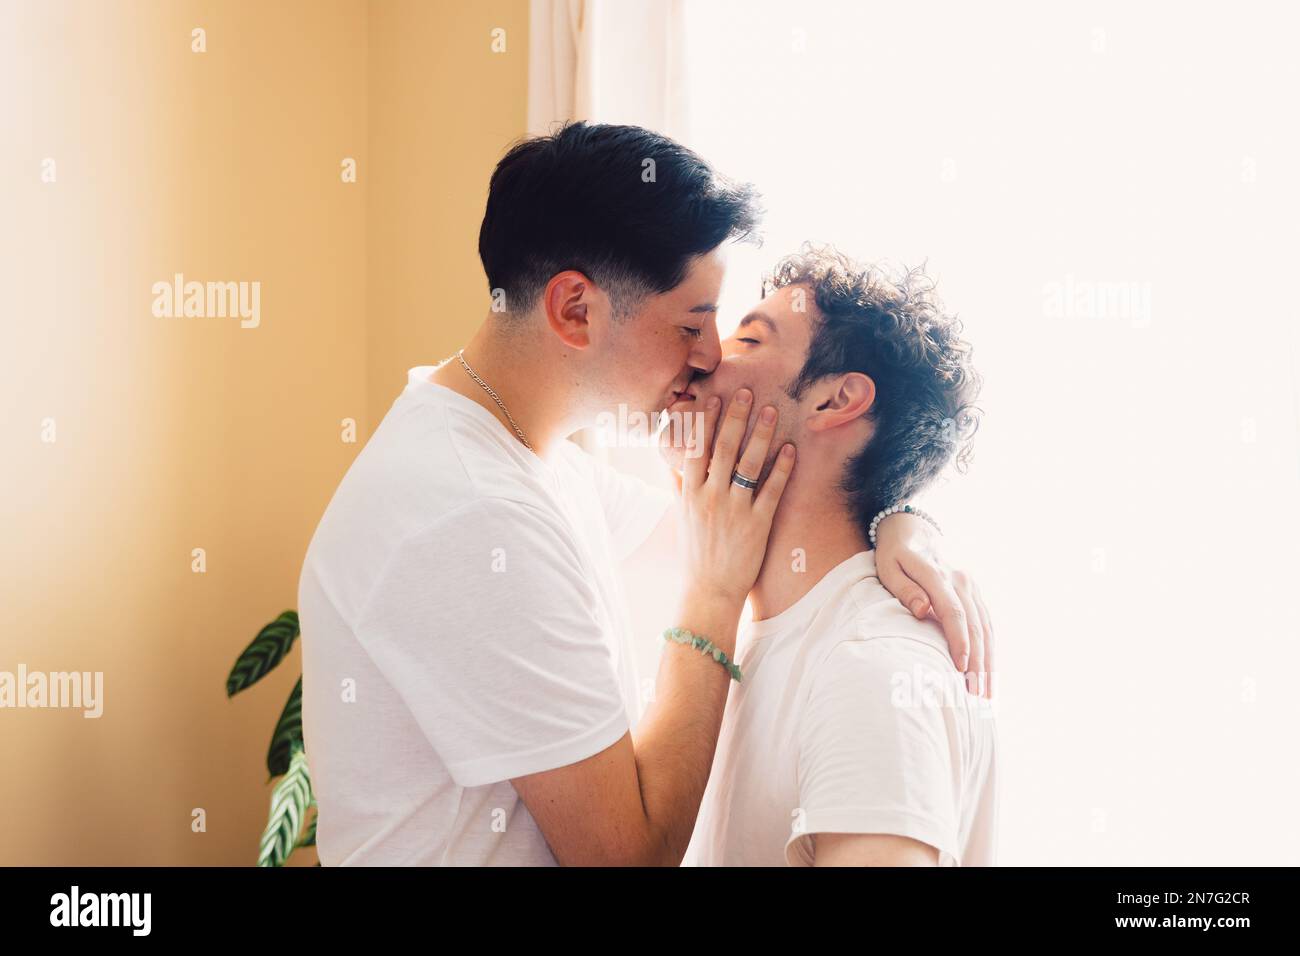 Schwules Paar, das sich romantisch auf den Mund küsst, im Wohnzimmer. LGBT-Beziehung und Routine. Stockfoto